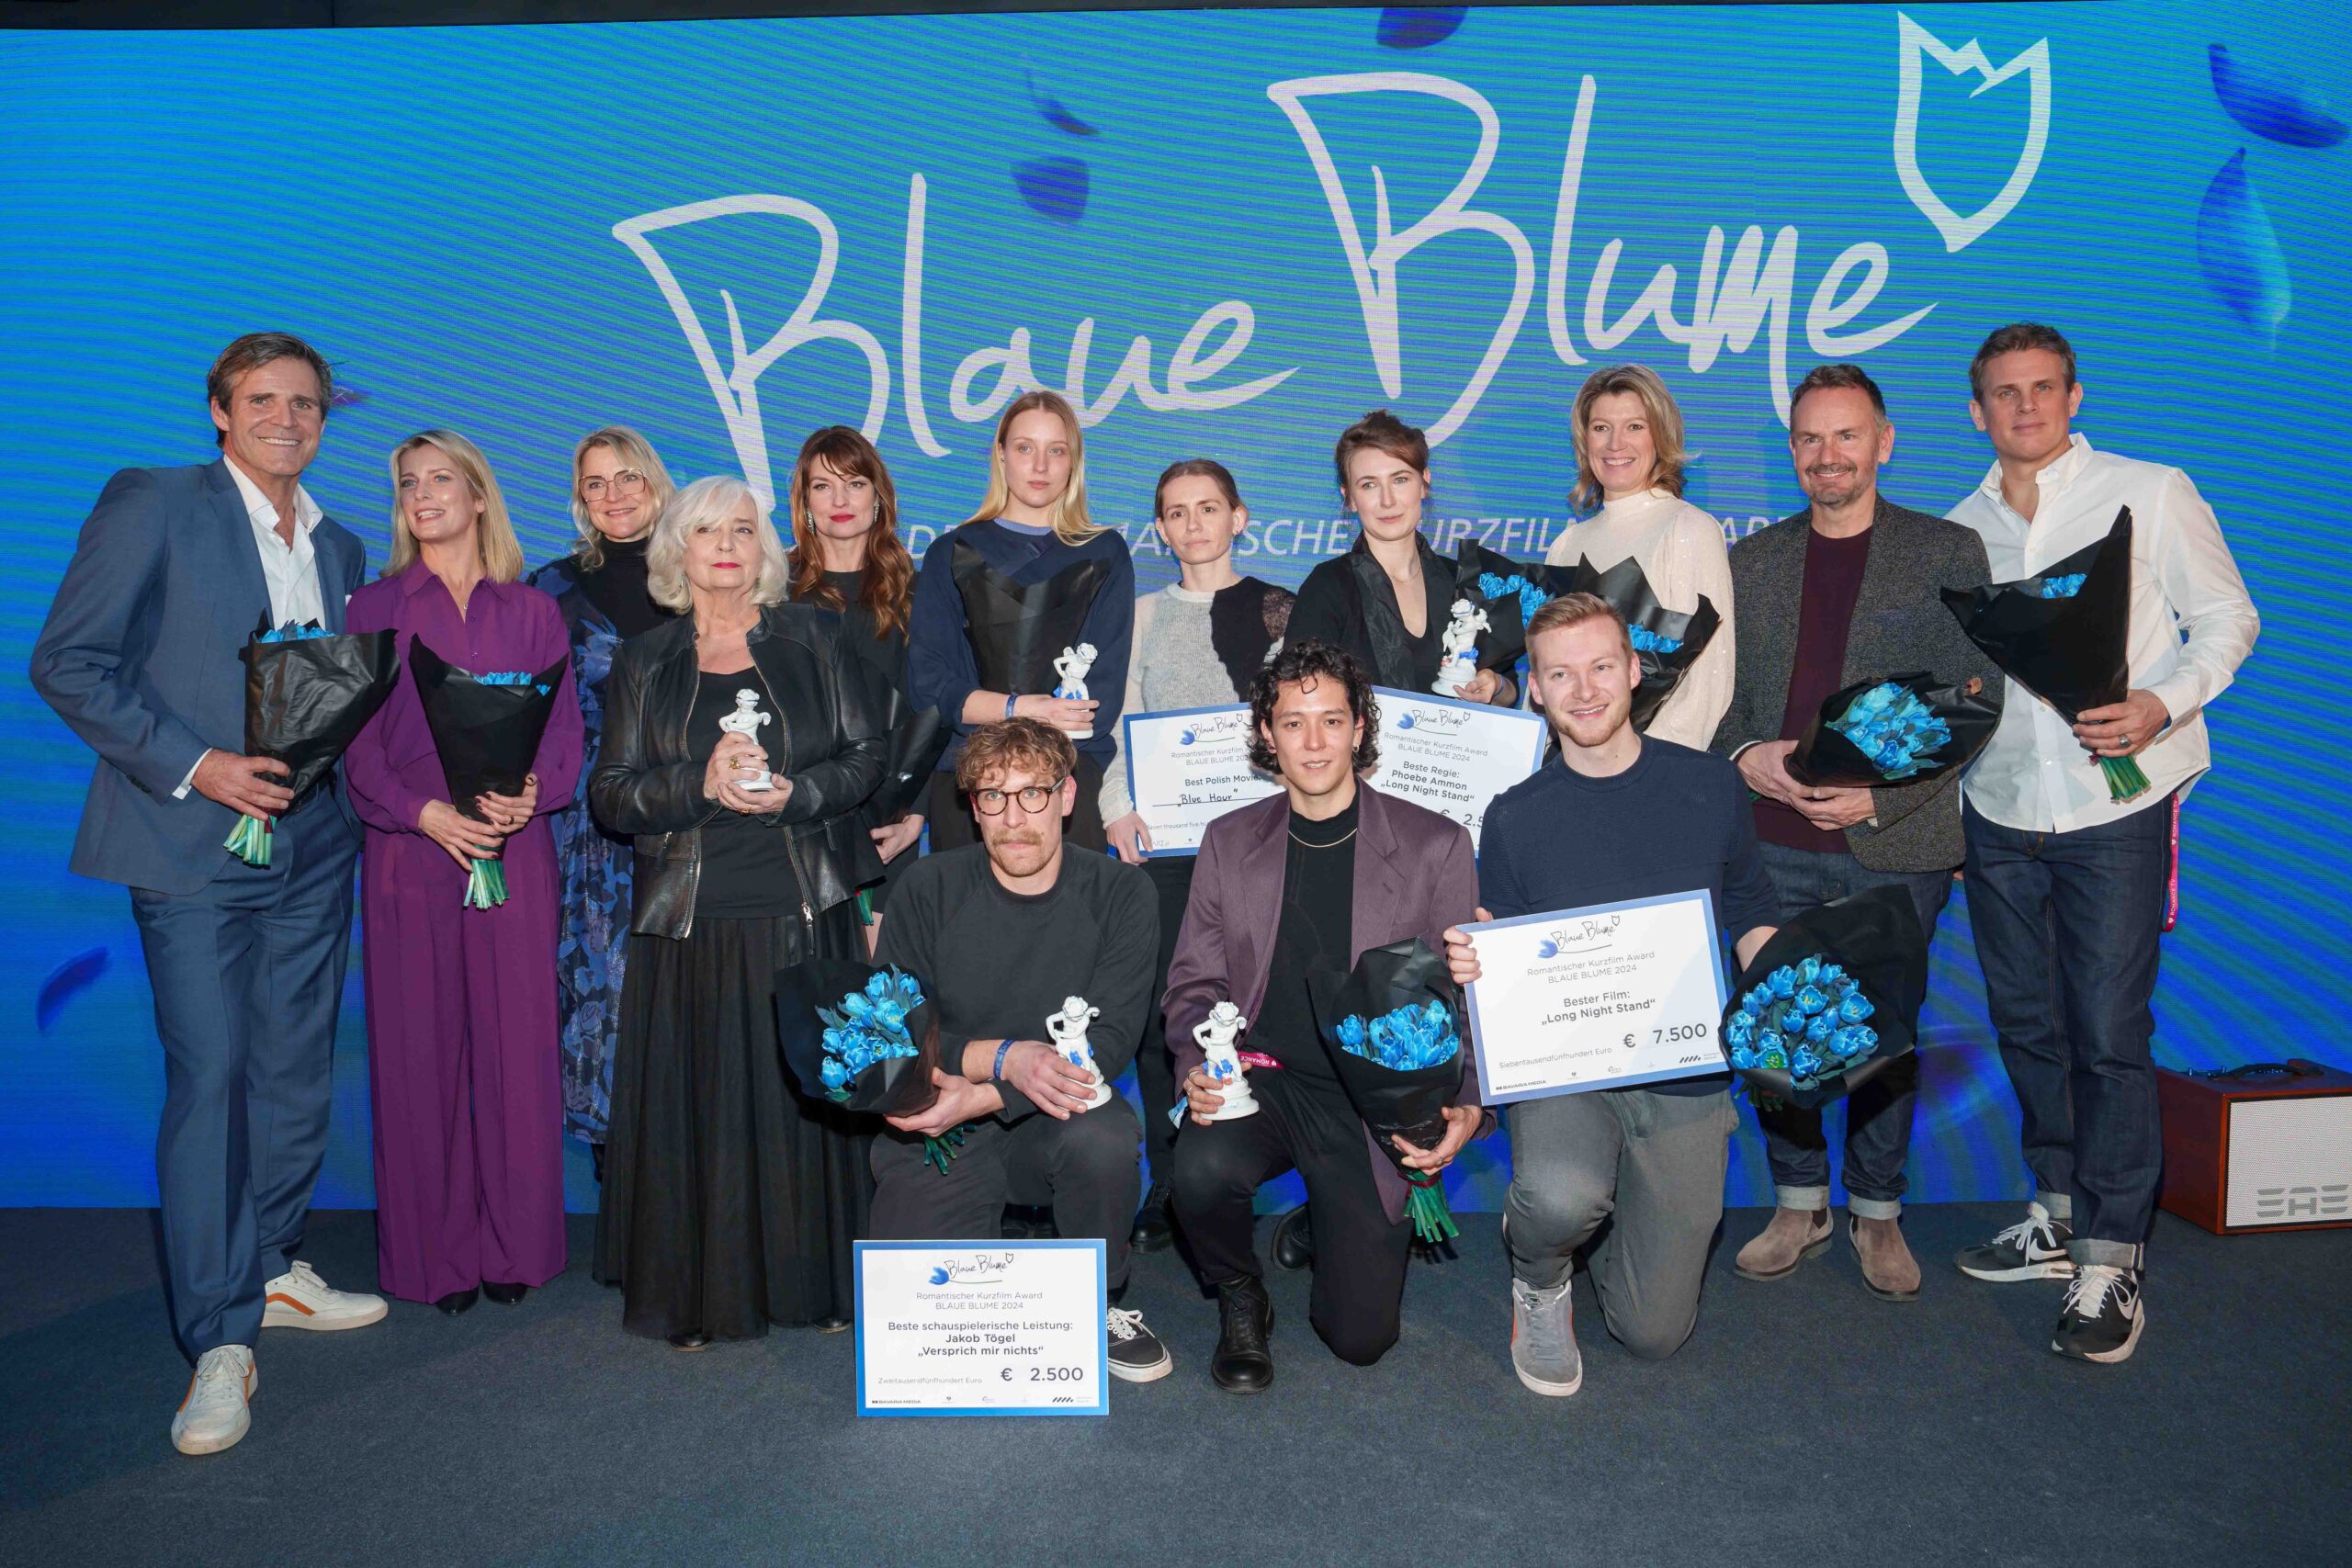 Polski film „Blue Hour” zwycięzcą nagrody Blaue Blume w Berlinie!